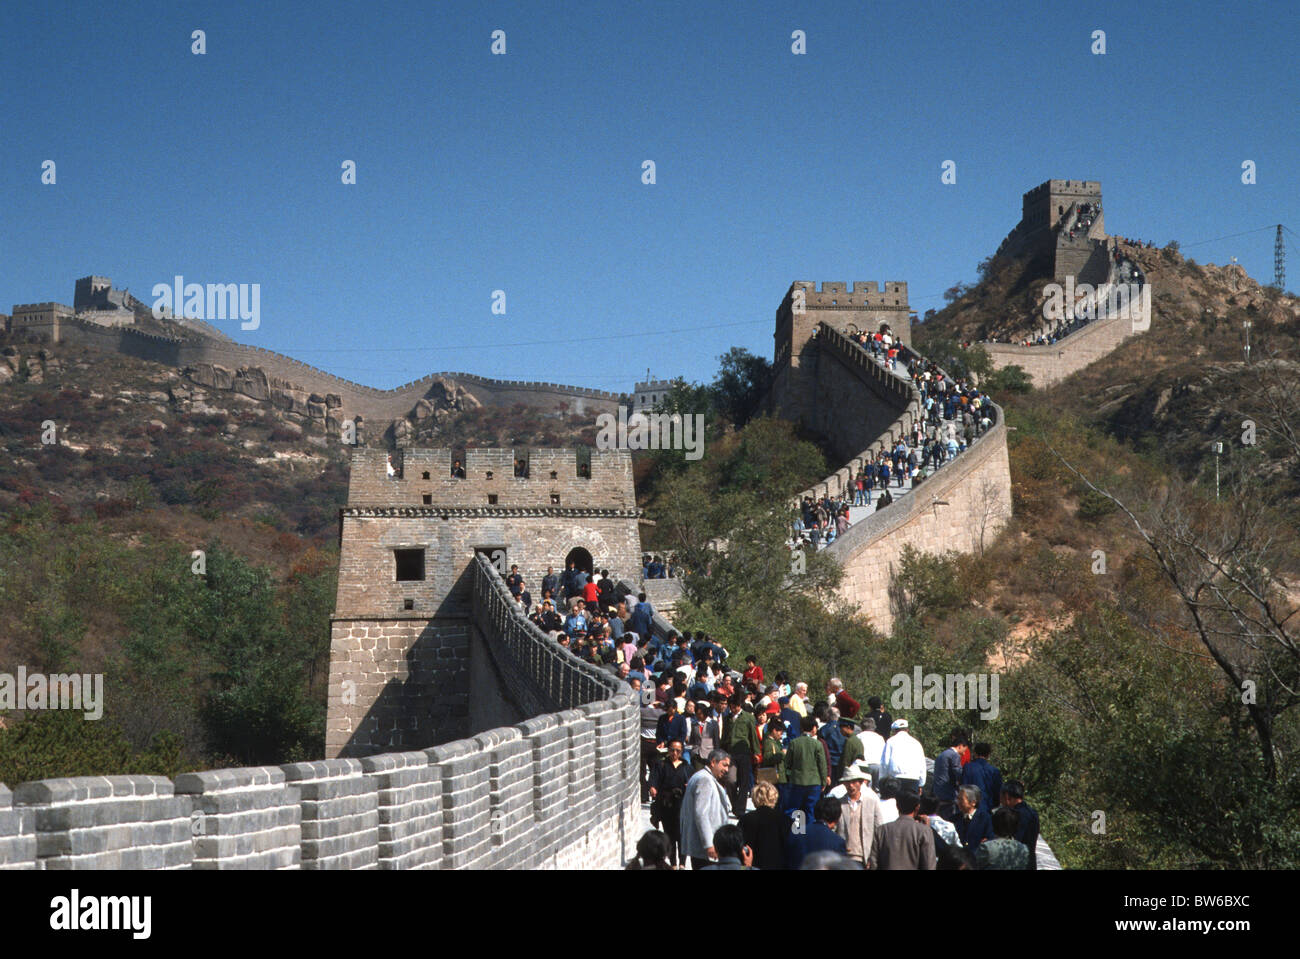 Tourists climb the Great Wall of China at Badaling, China. Stock Photo